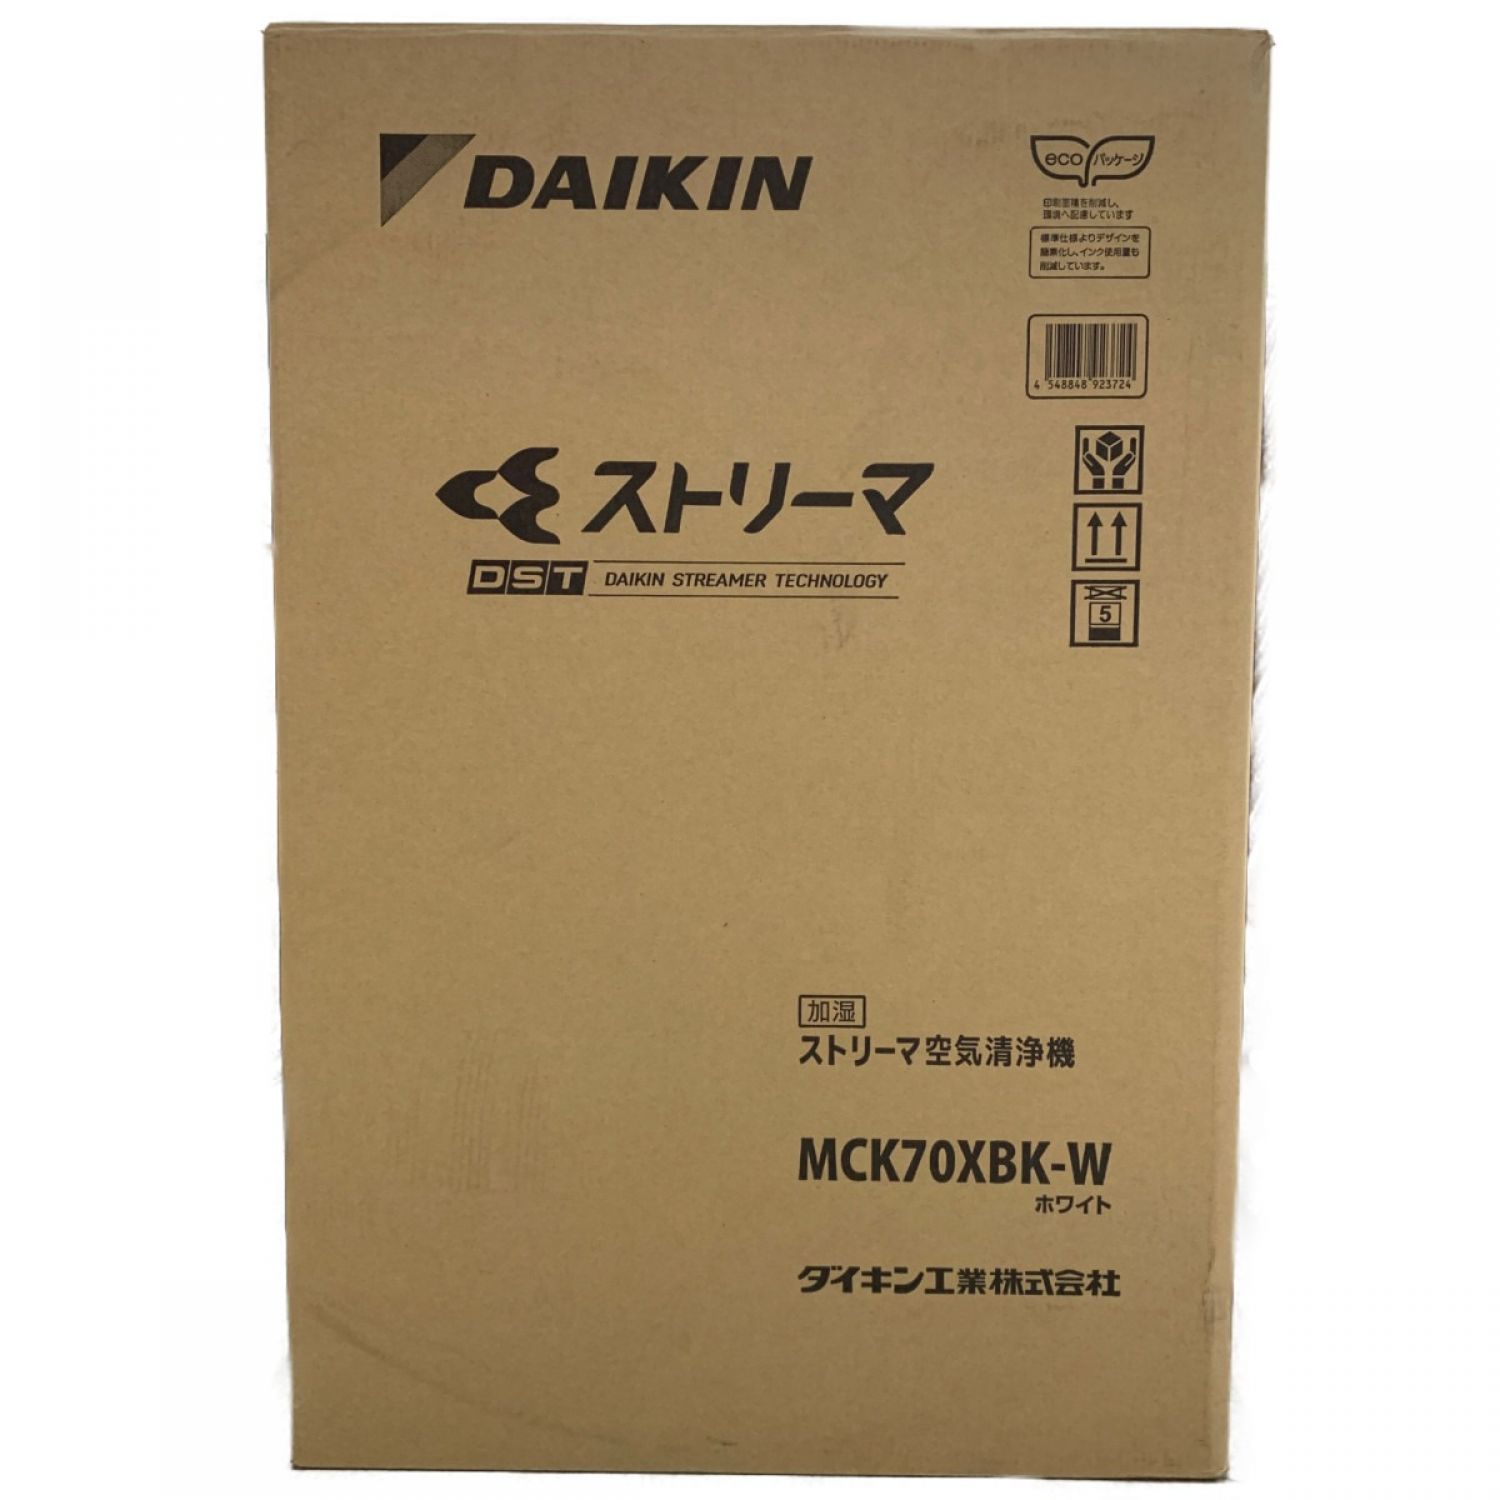 ダイキン DAIKIN 加湿空気清浄機MCK70XBK-W - 空気清浄器